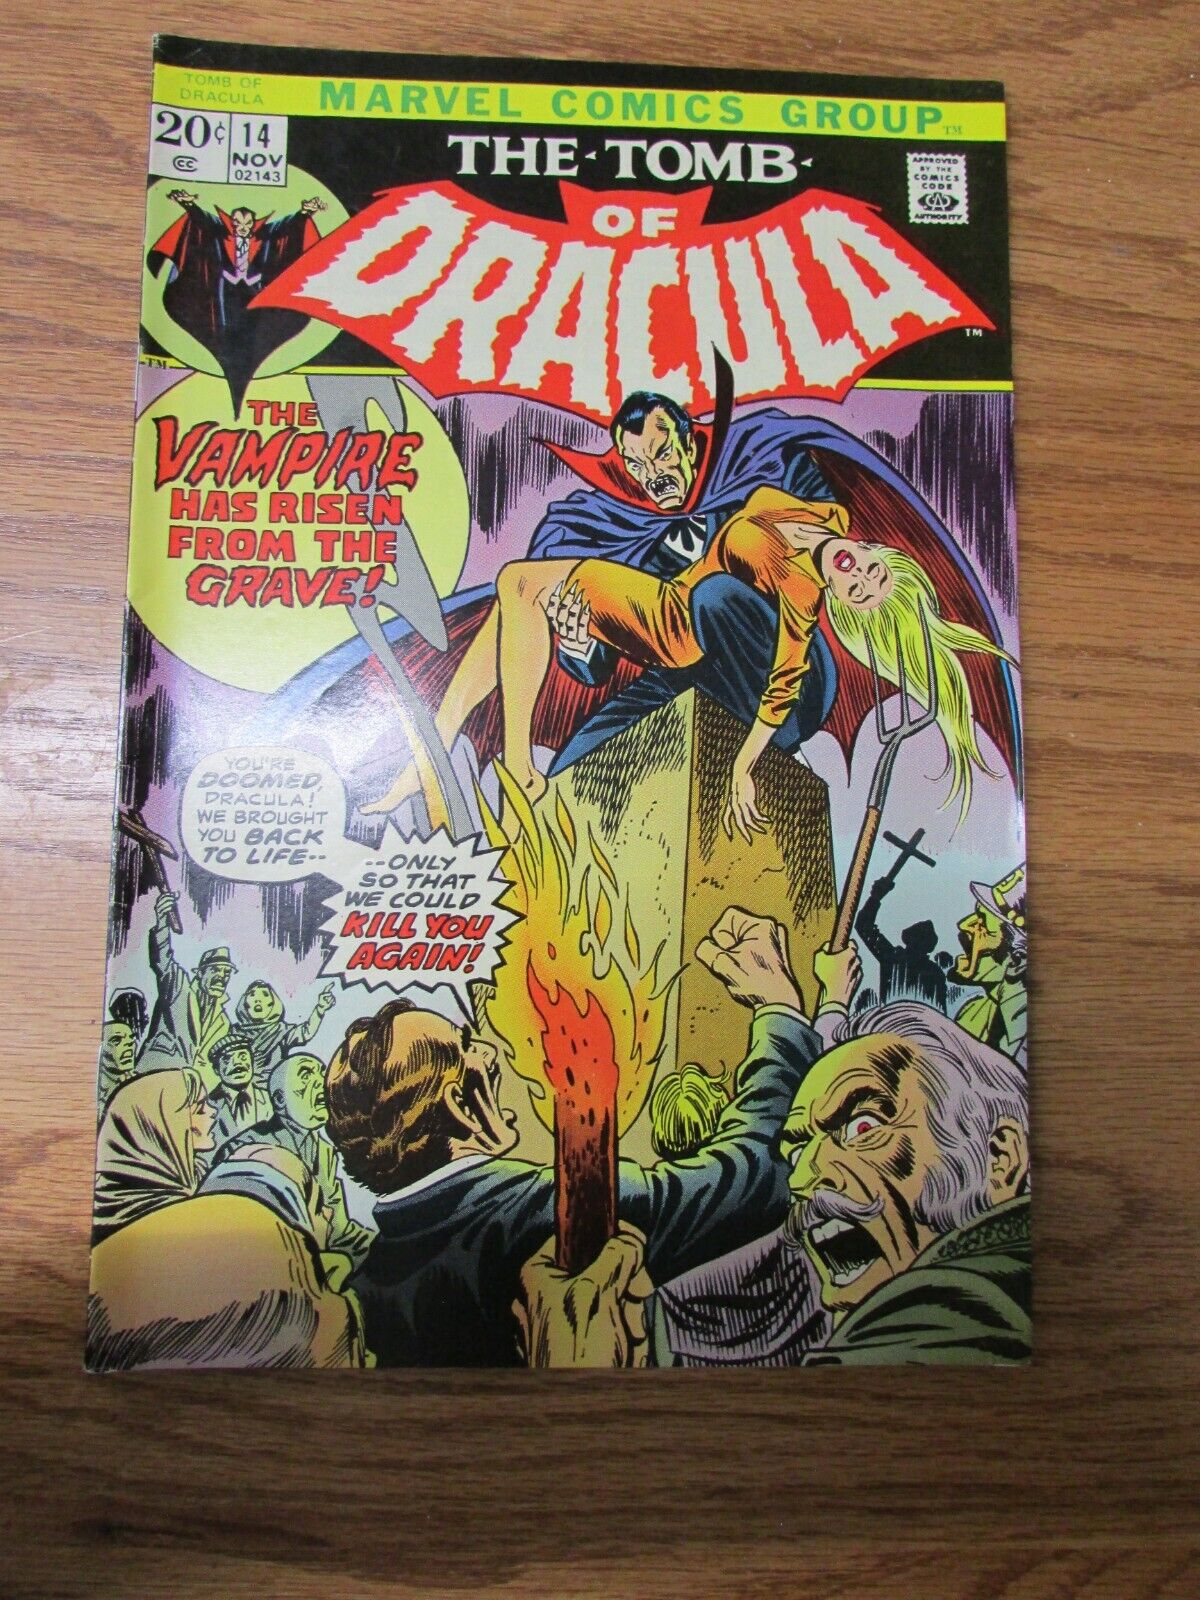 Vintage Marvel Comics The Tomb of Dracula Vol. 1 No. 14 October 1973 Comic Book